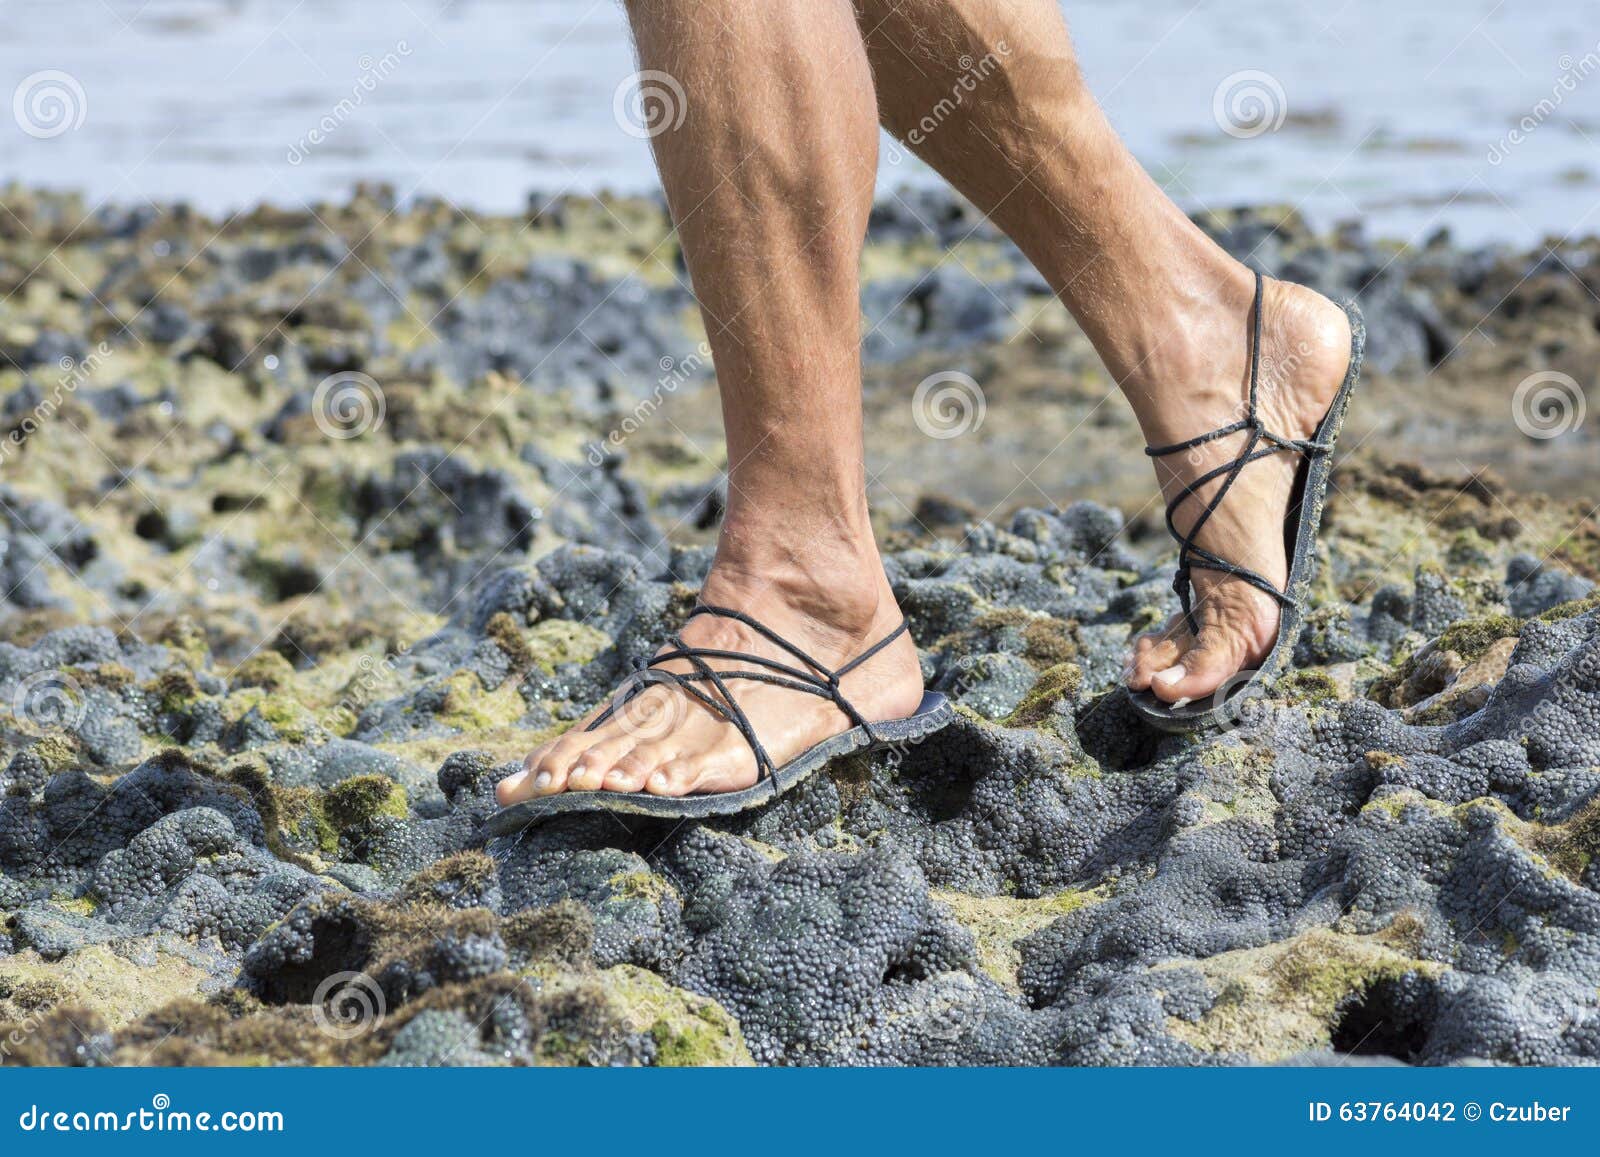 reef walking sandals